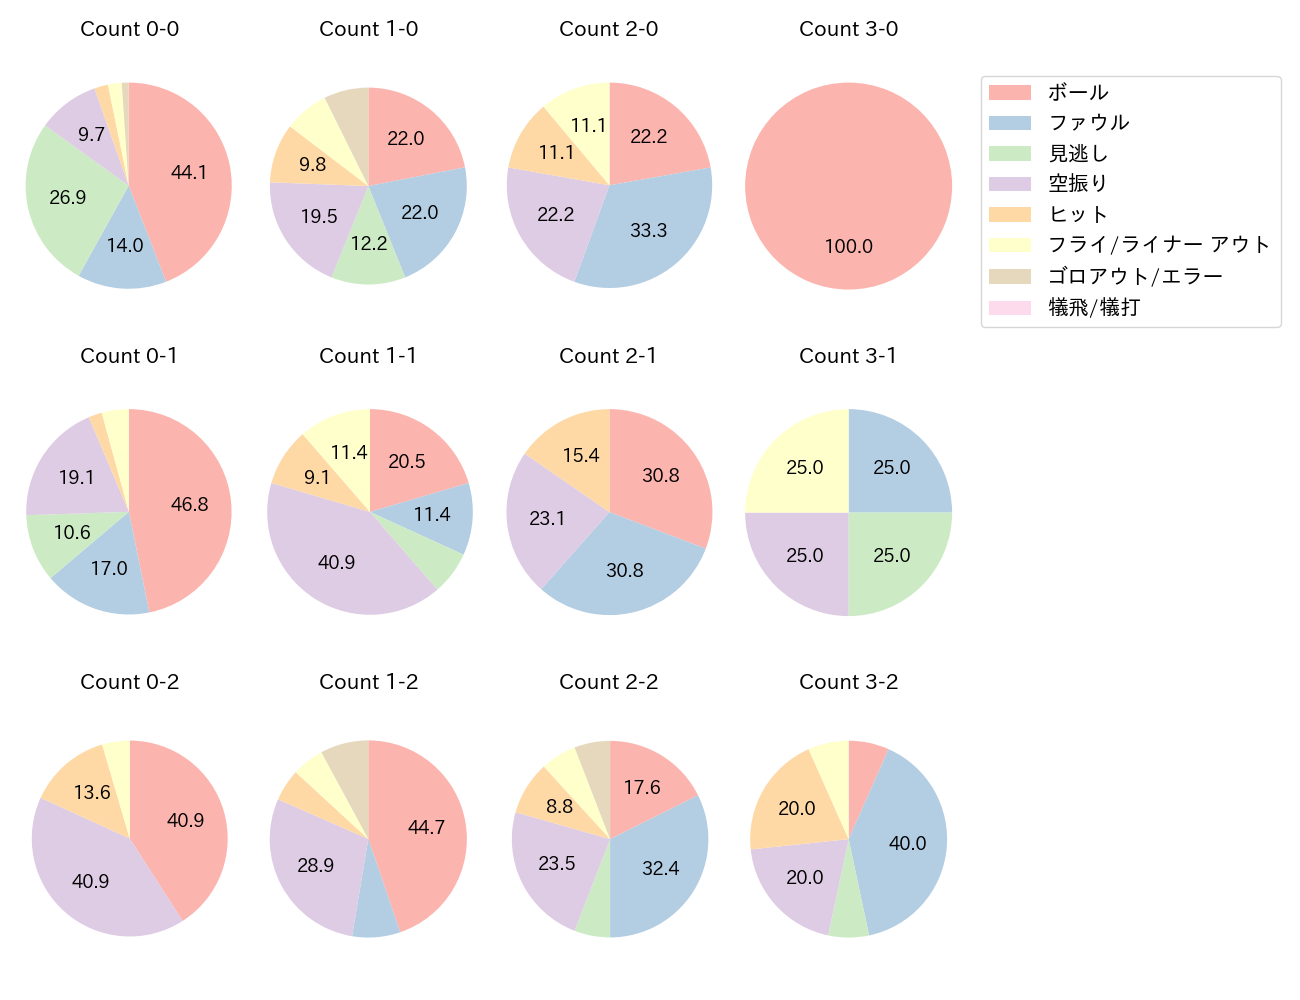 佐藤 輝明の球数分布(2021年6月)